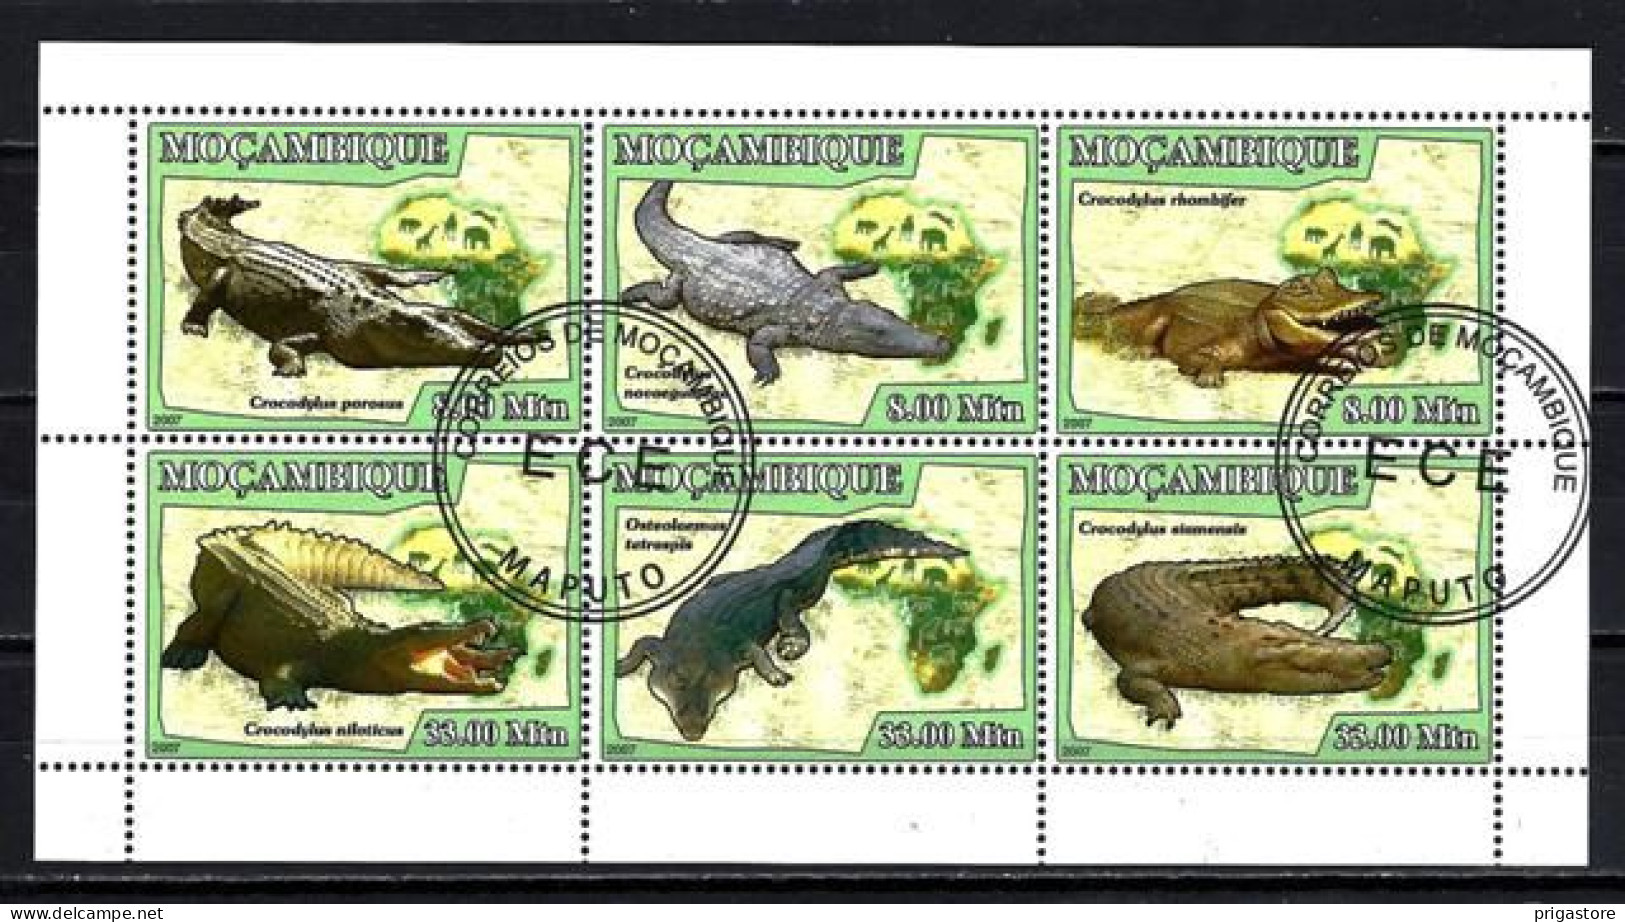 Mozambique 2007 Animaux Crocodiles (277) Yvert N° 2384 à 2389 Oblitérés Used - Mozambique